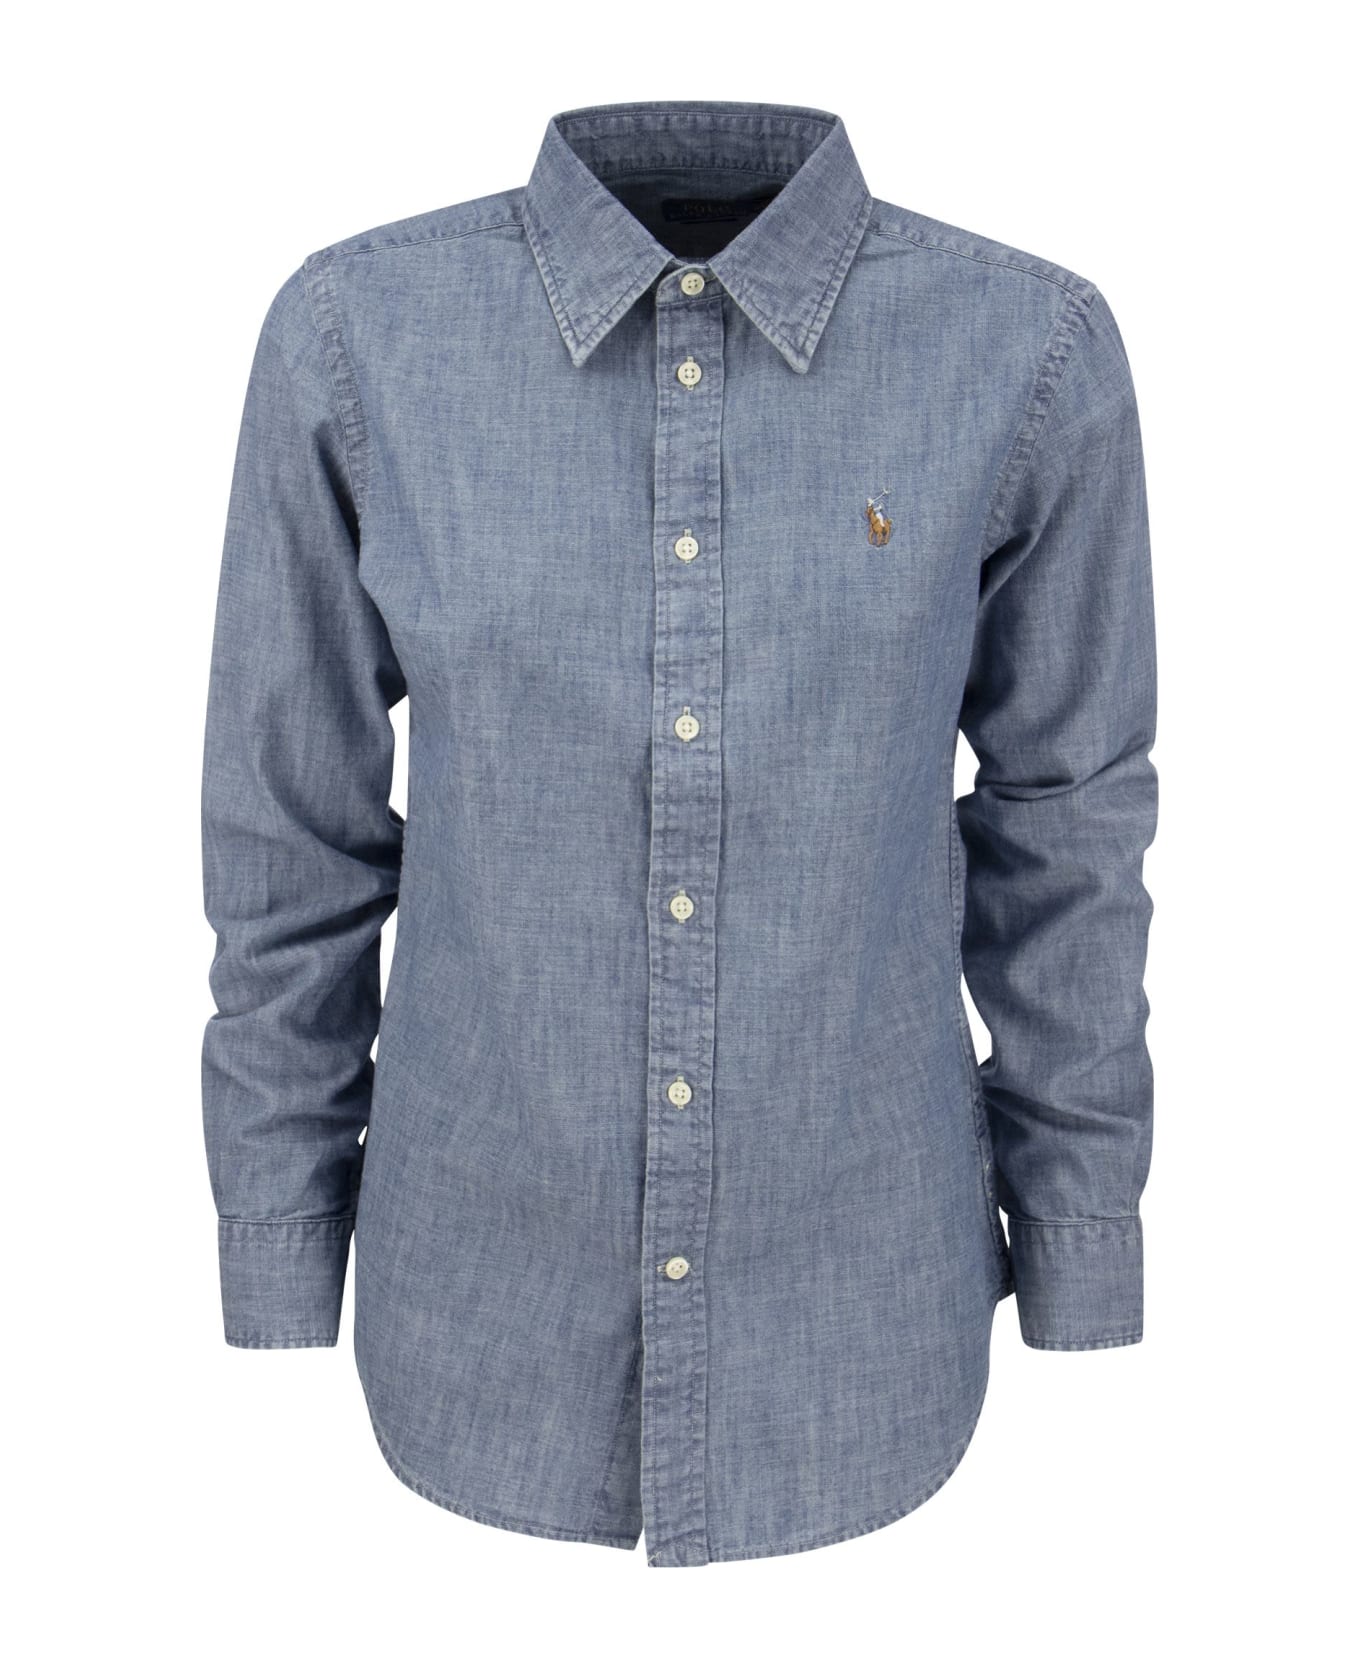 Ralph Lauren Shirt In Indigo Cotton Chambray - Light Blue